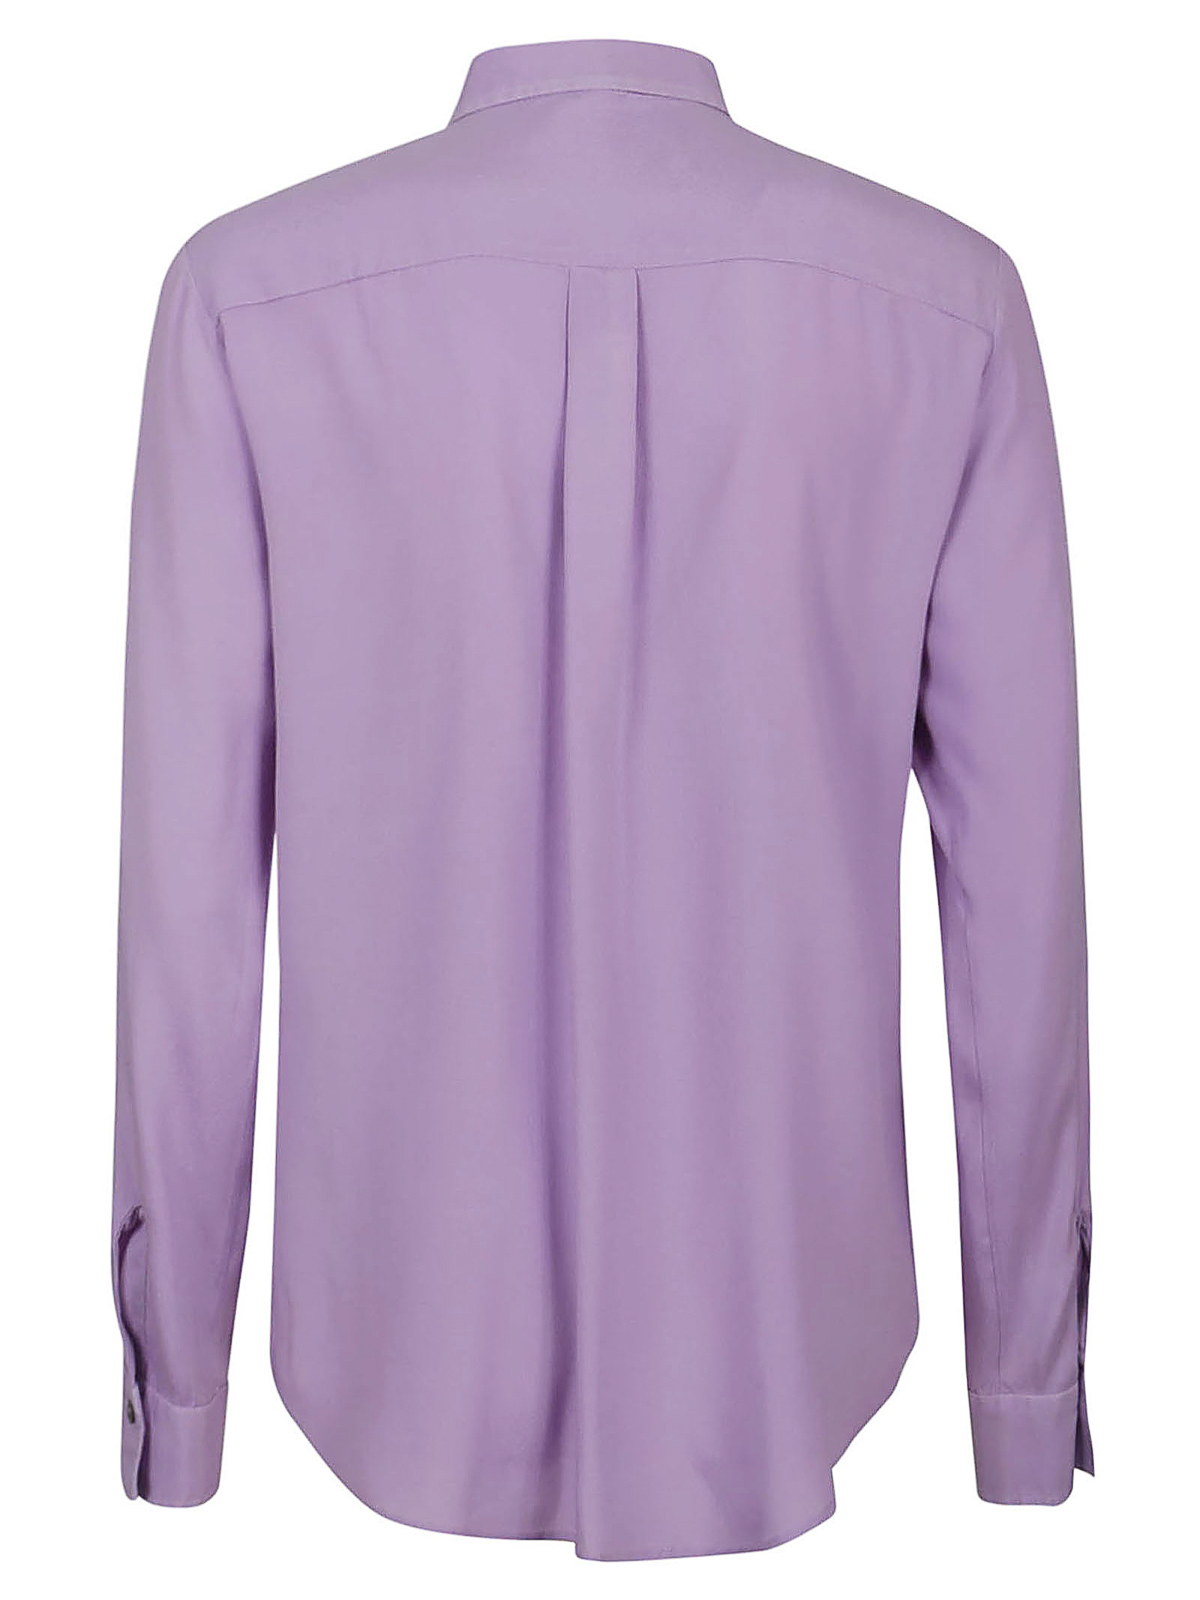 Shop Her Camisa - Púrpura Claro